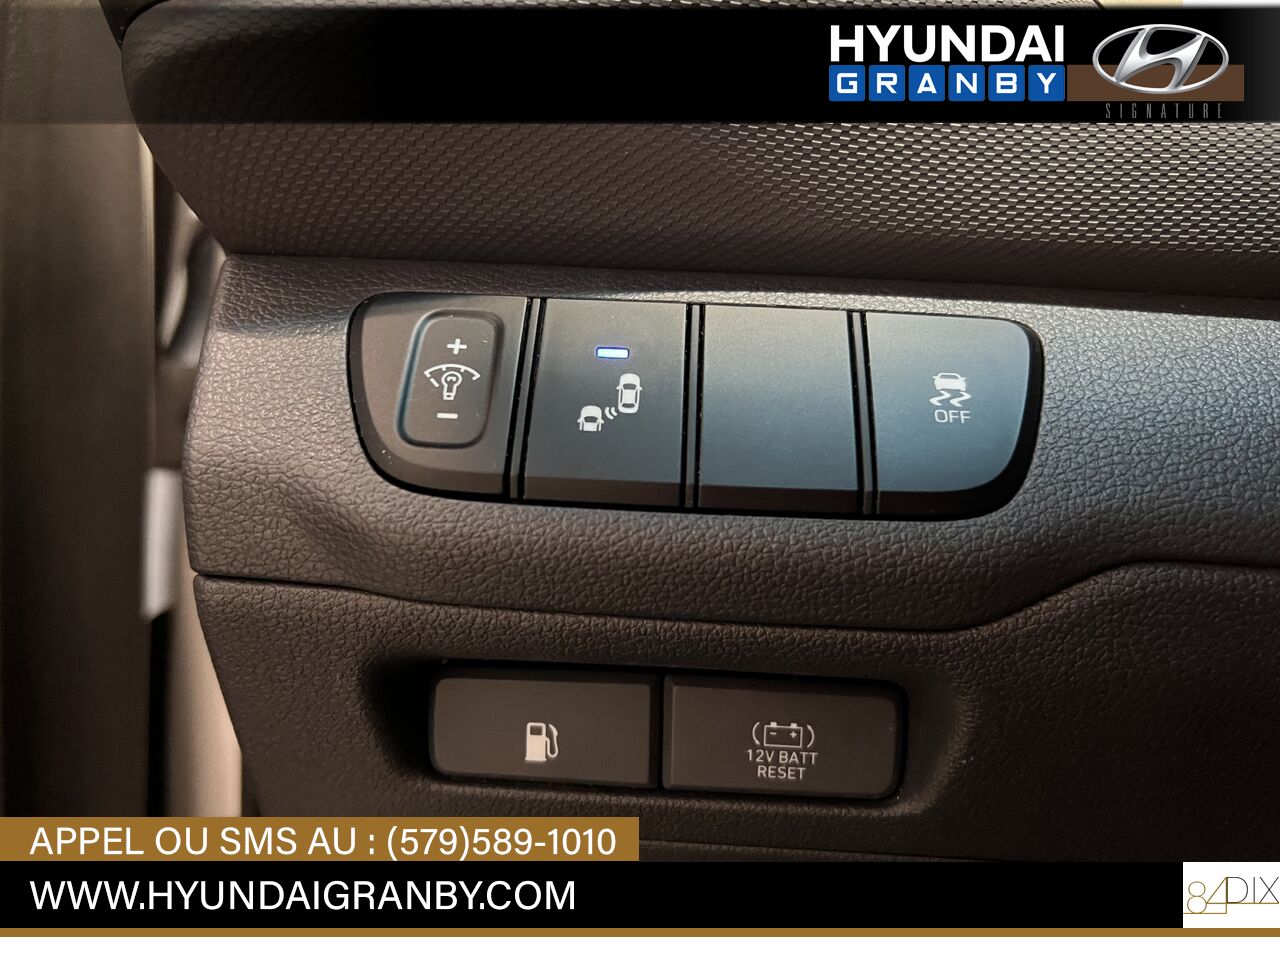 Hyundai Ioniq hybride 2017 Granby - photo #23